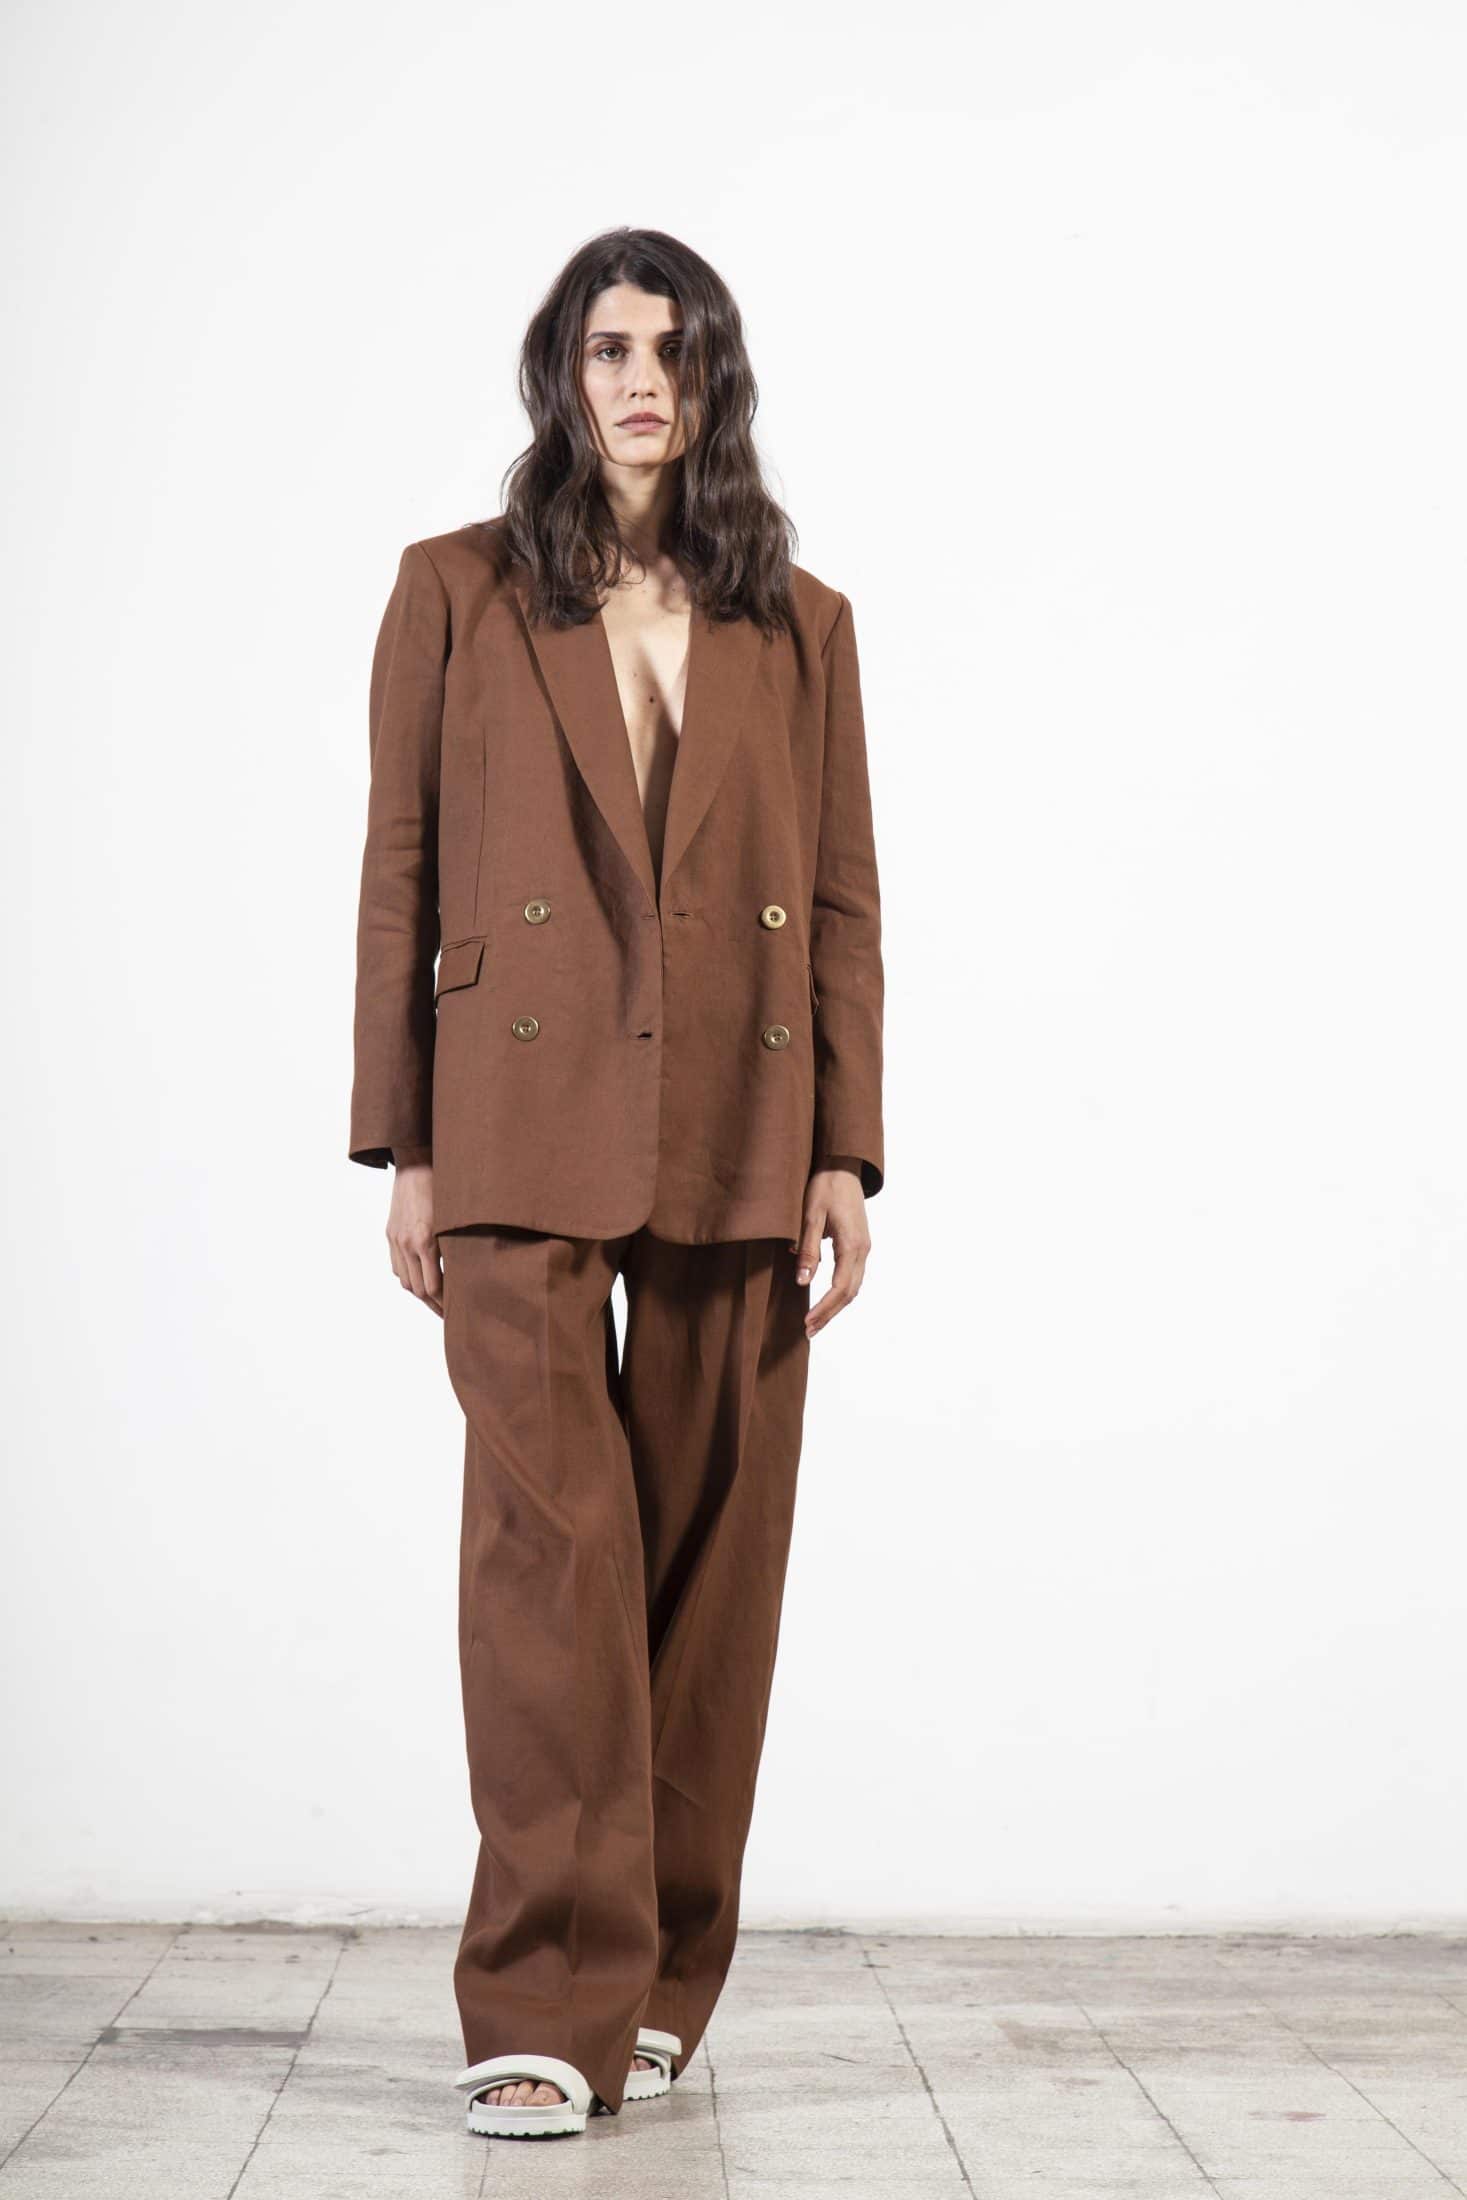 Jacken & Oberbekleidung aus der Souldaze-Kollektion Margot Jacket Brown nachhaltige Mode ethische Mode